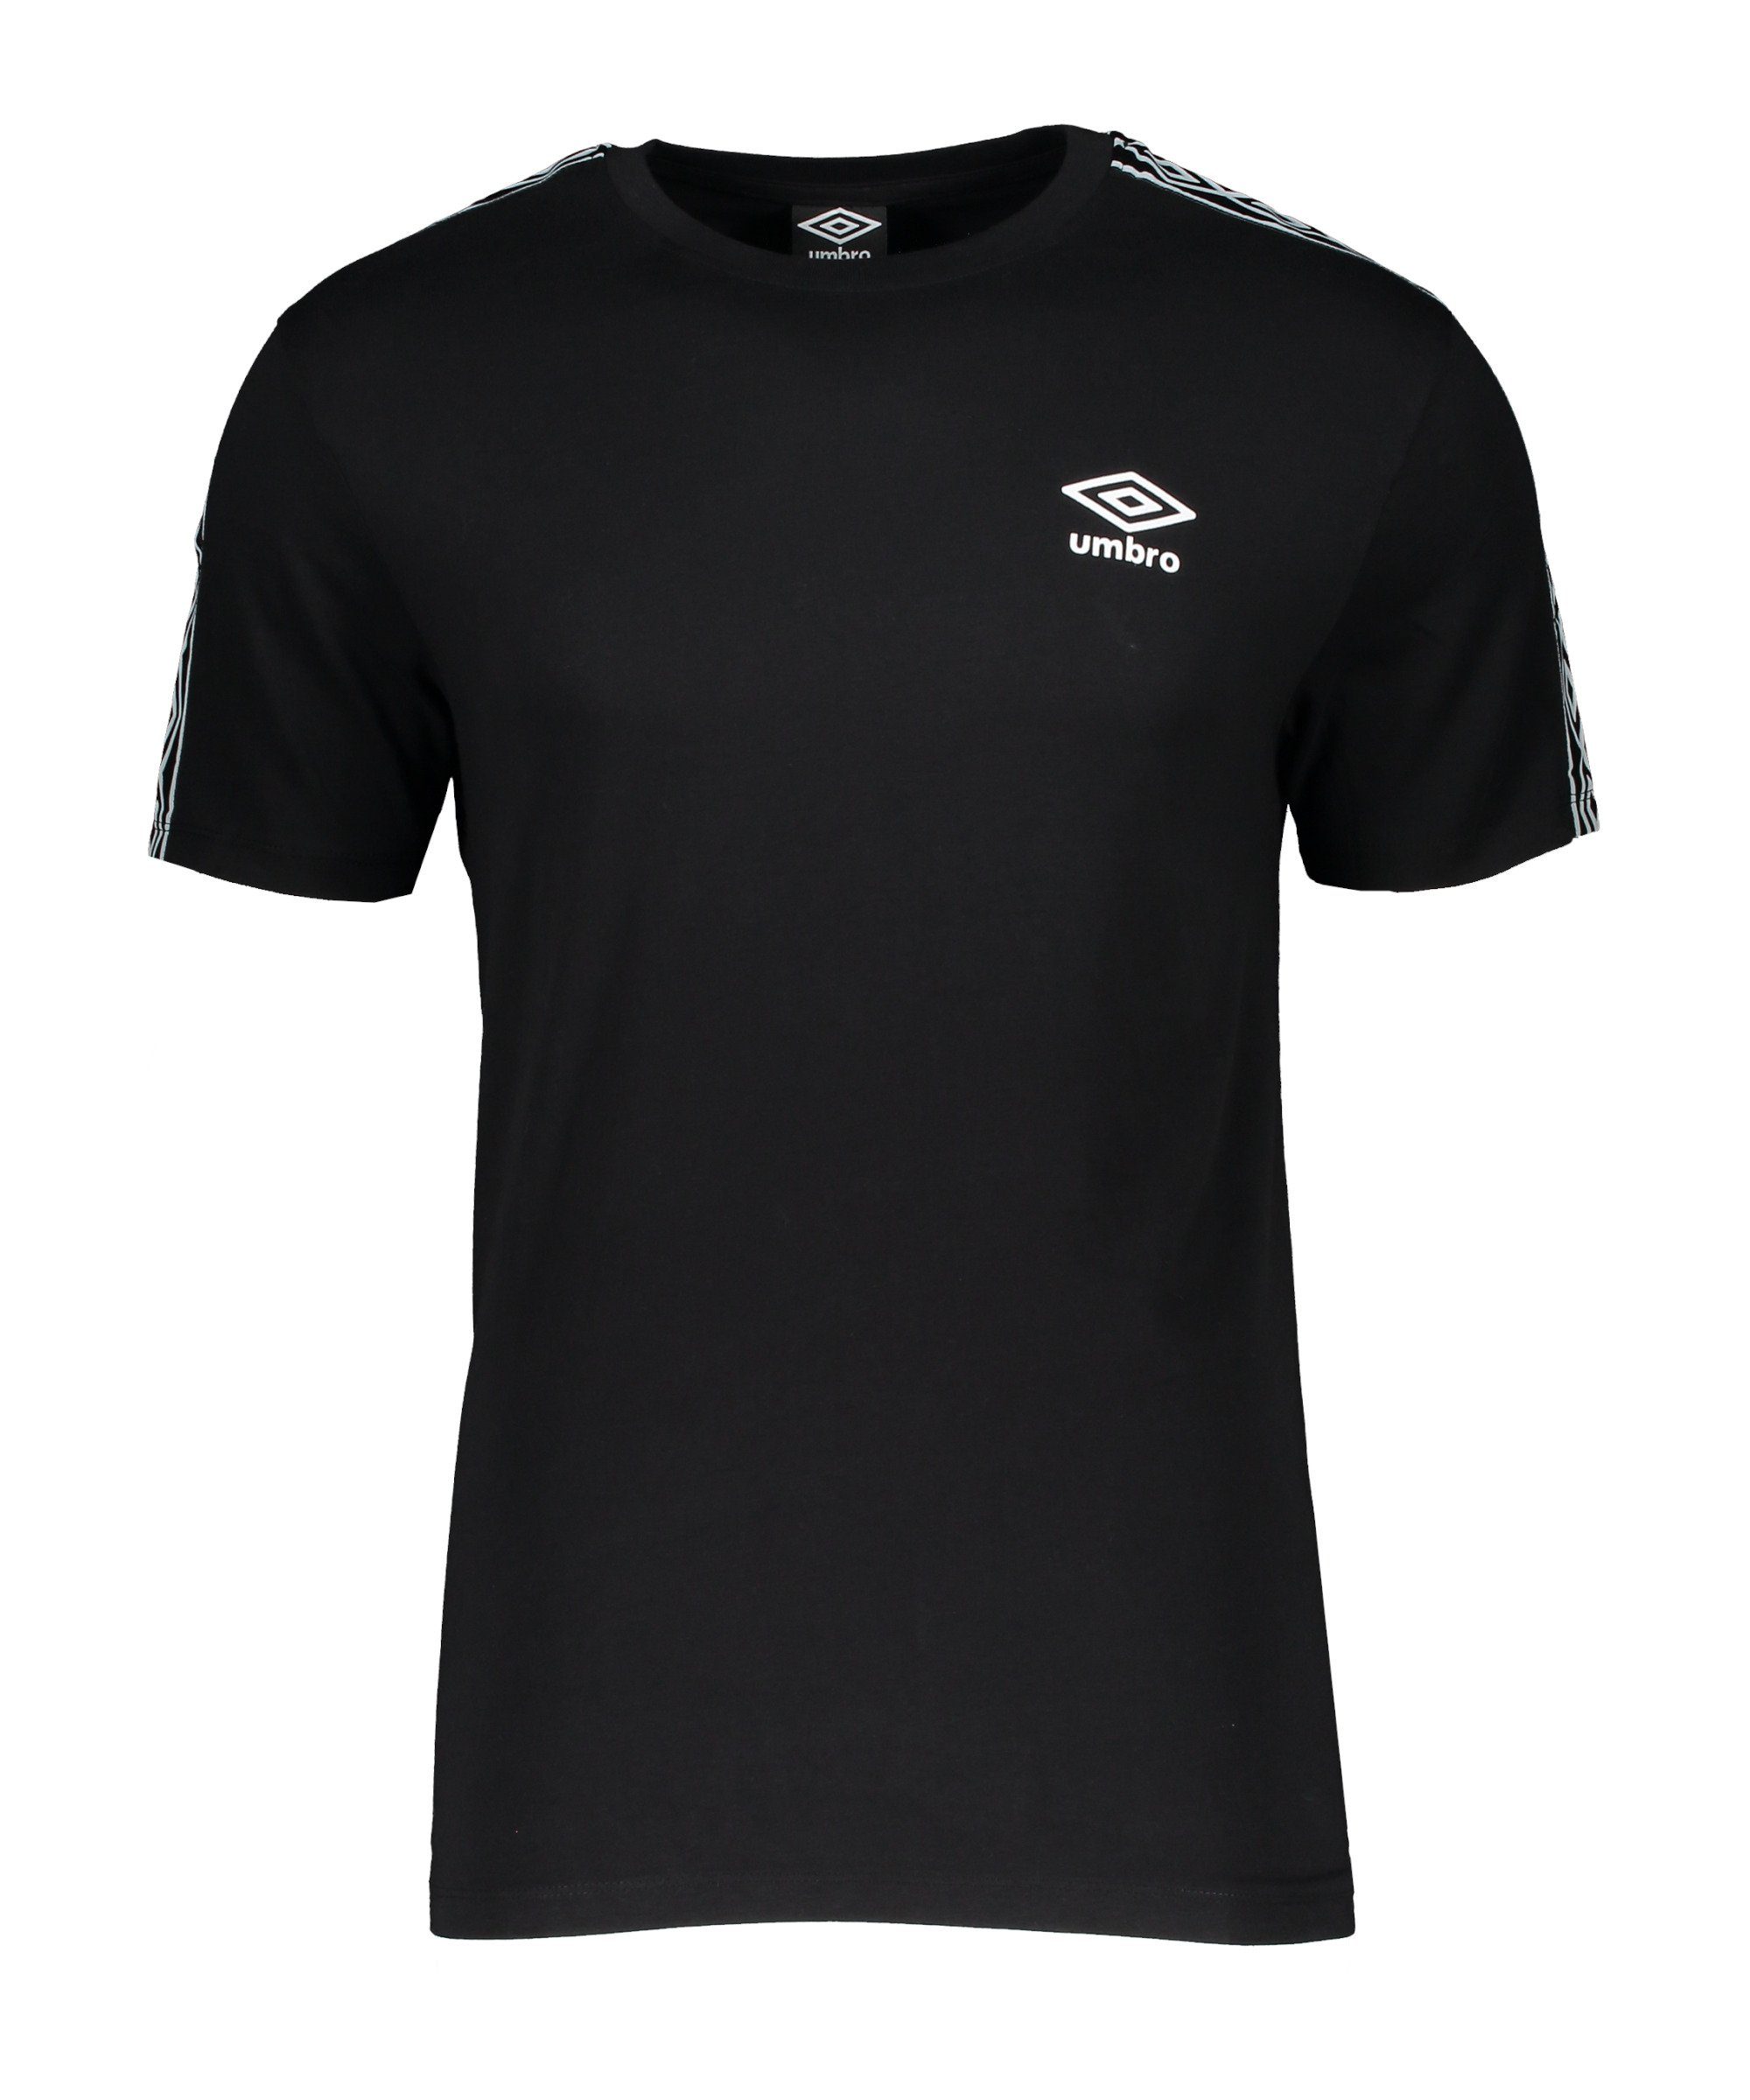 Taped schwarzweiss Umbro T-Shirt default T-Shirt Retro